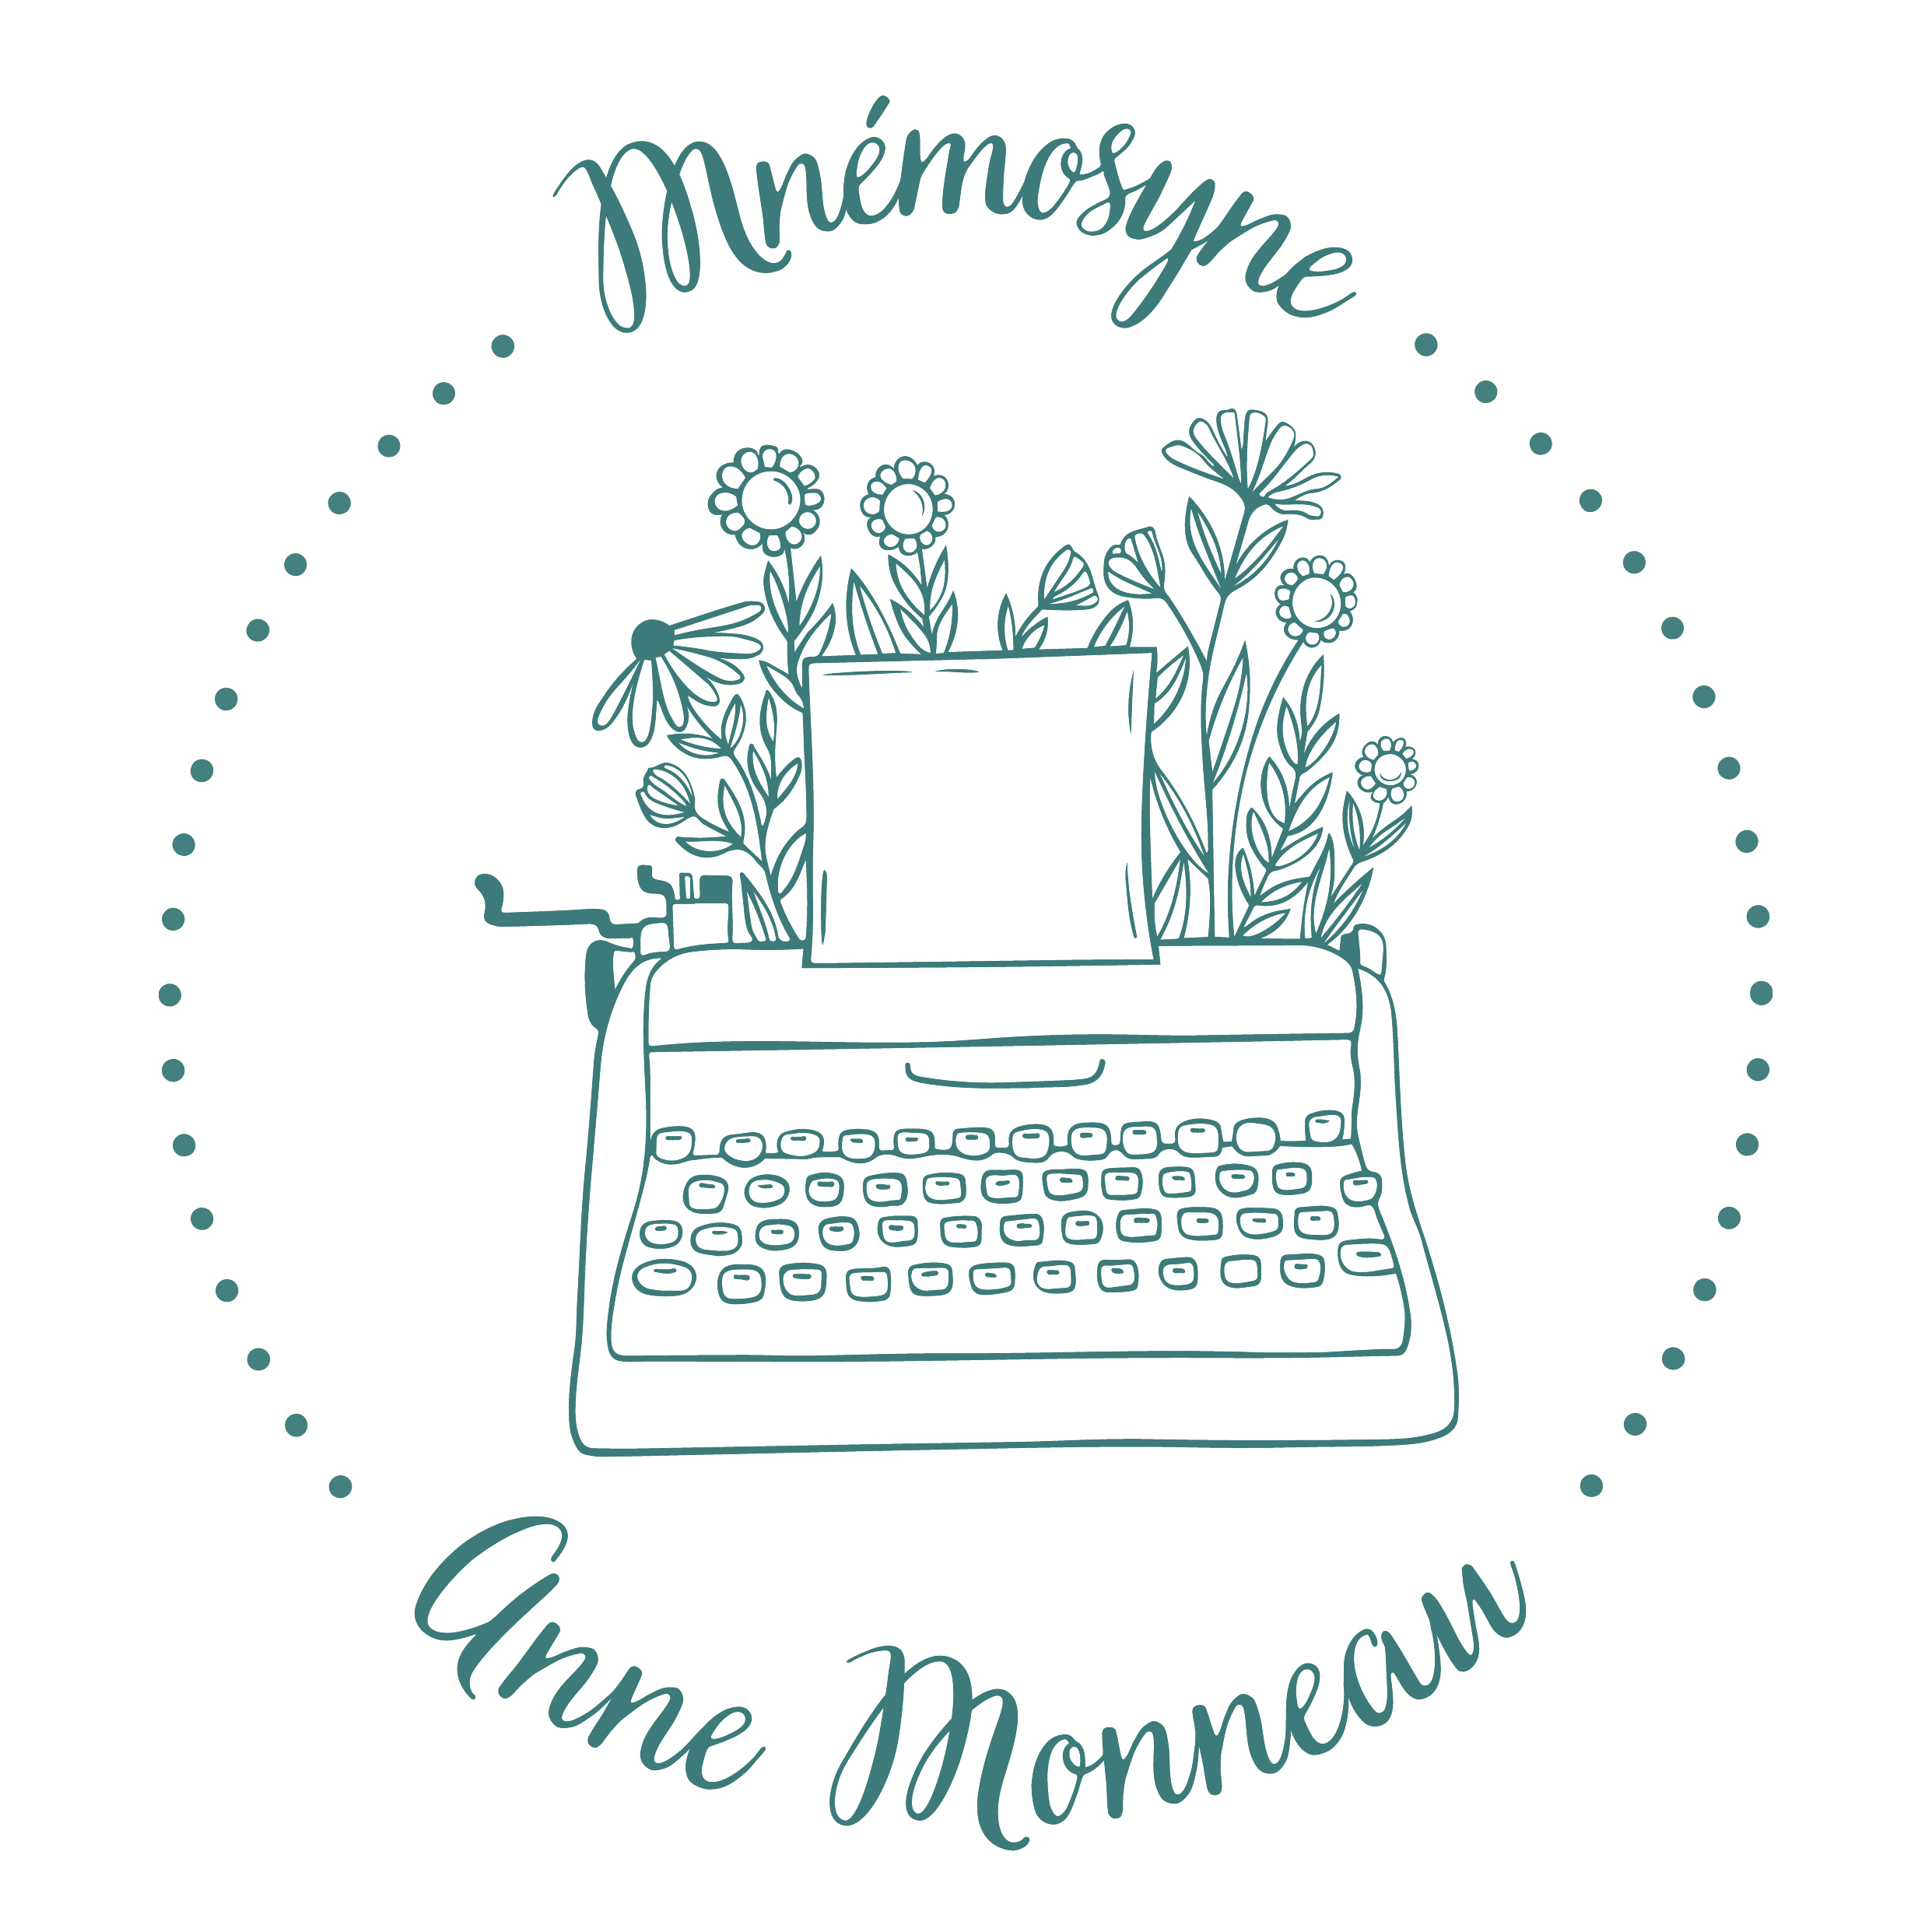 Logo de Anne Monneau, Mémosyne, autrice, artiste et écrivaine, représentant une machine à écrire avec des fleurs, le tout entouré d'un cercle en pointillé. On peut lire, en haut et en bas du cercle Mnémosyne et Anne Monneau